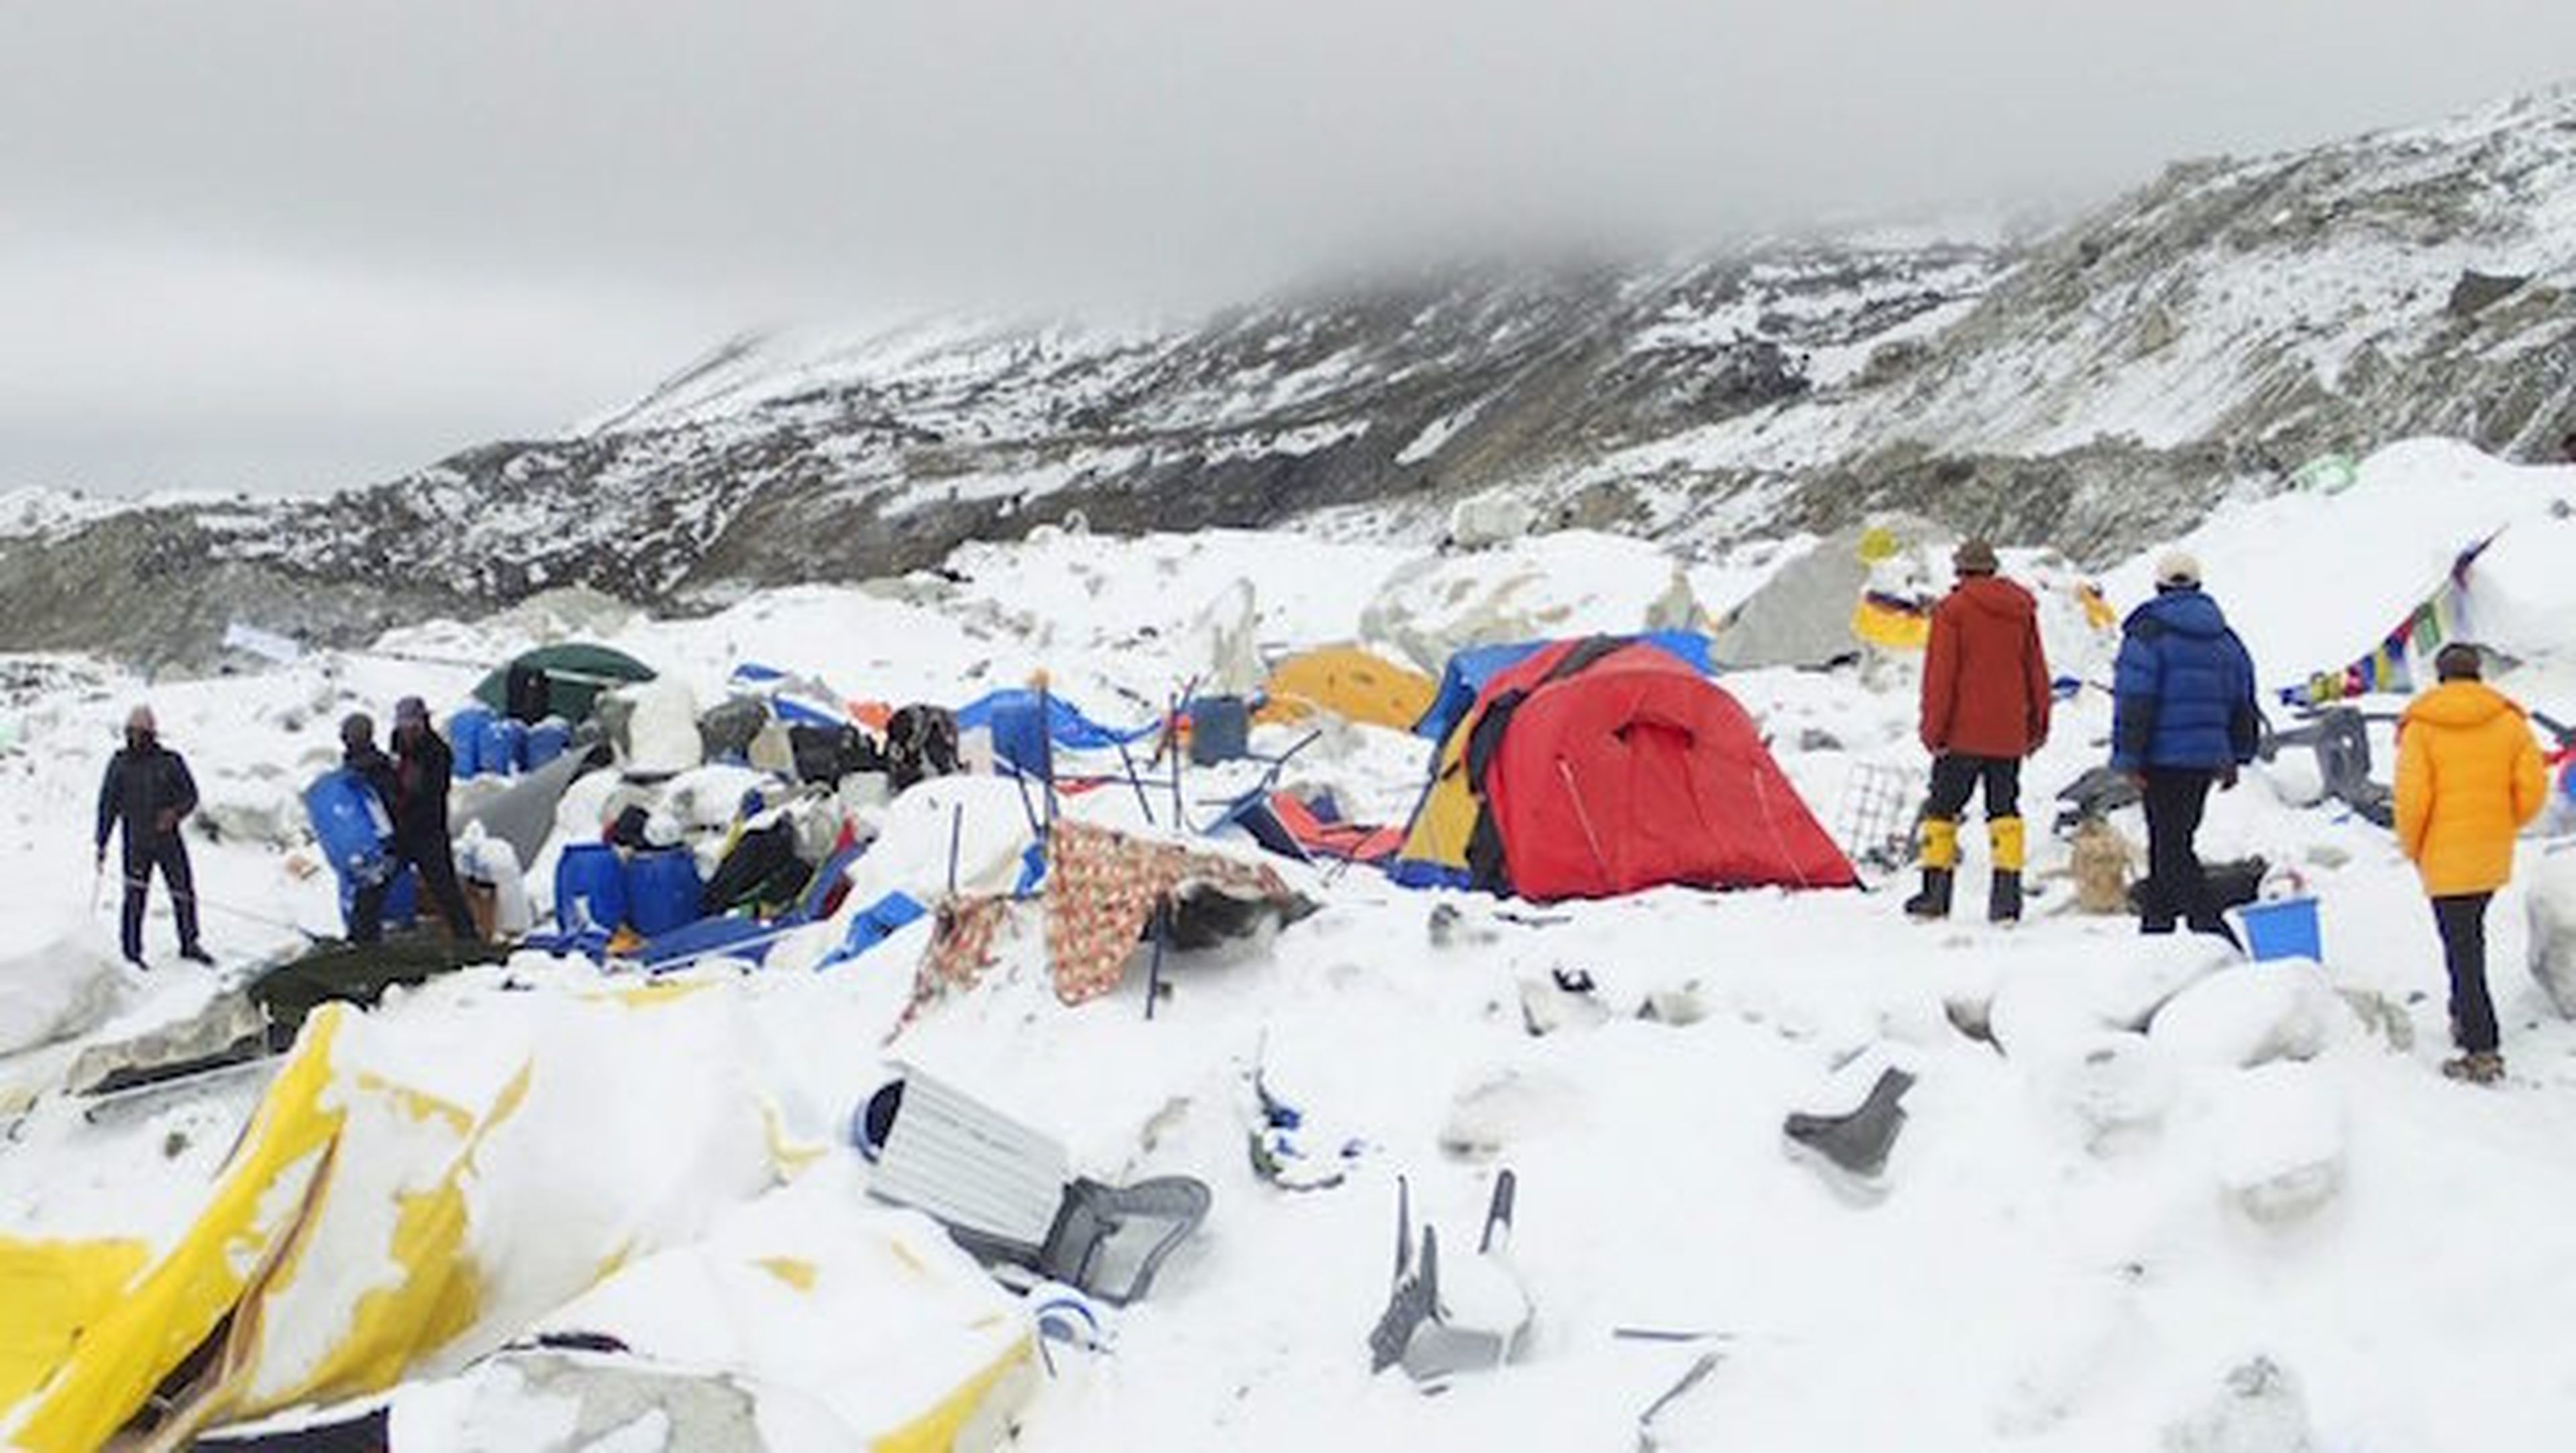 El campamento en la base del Everest quedó sepultado en una avalancha